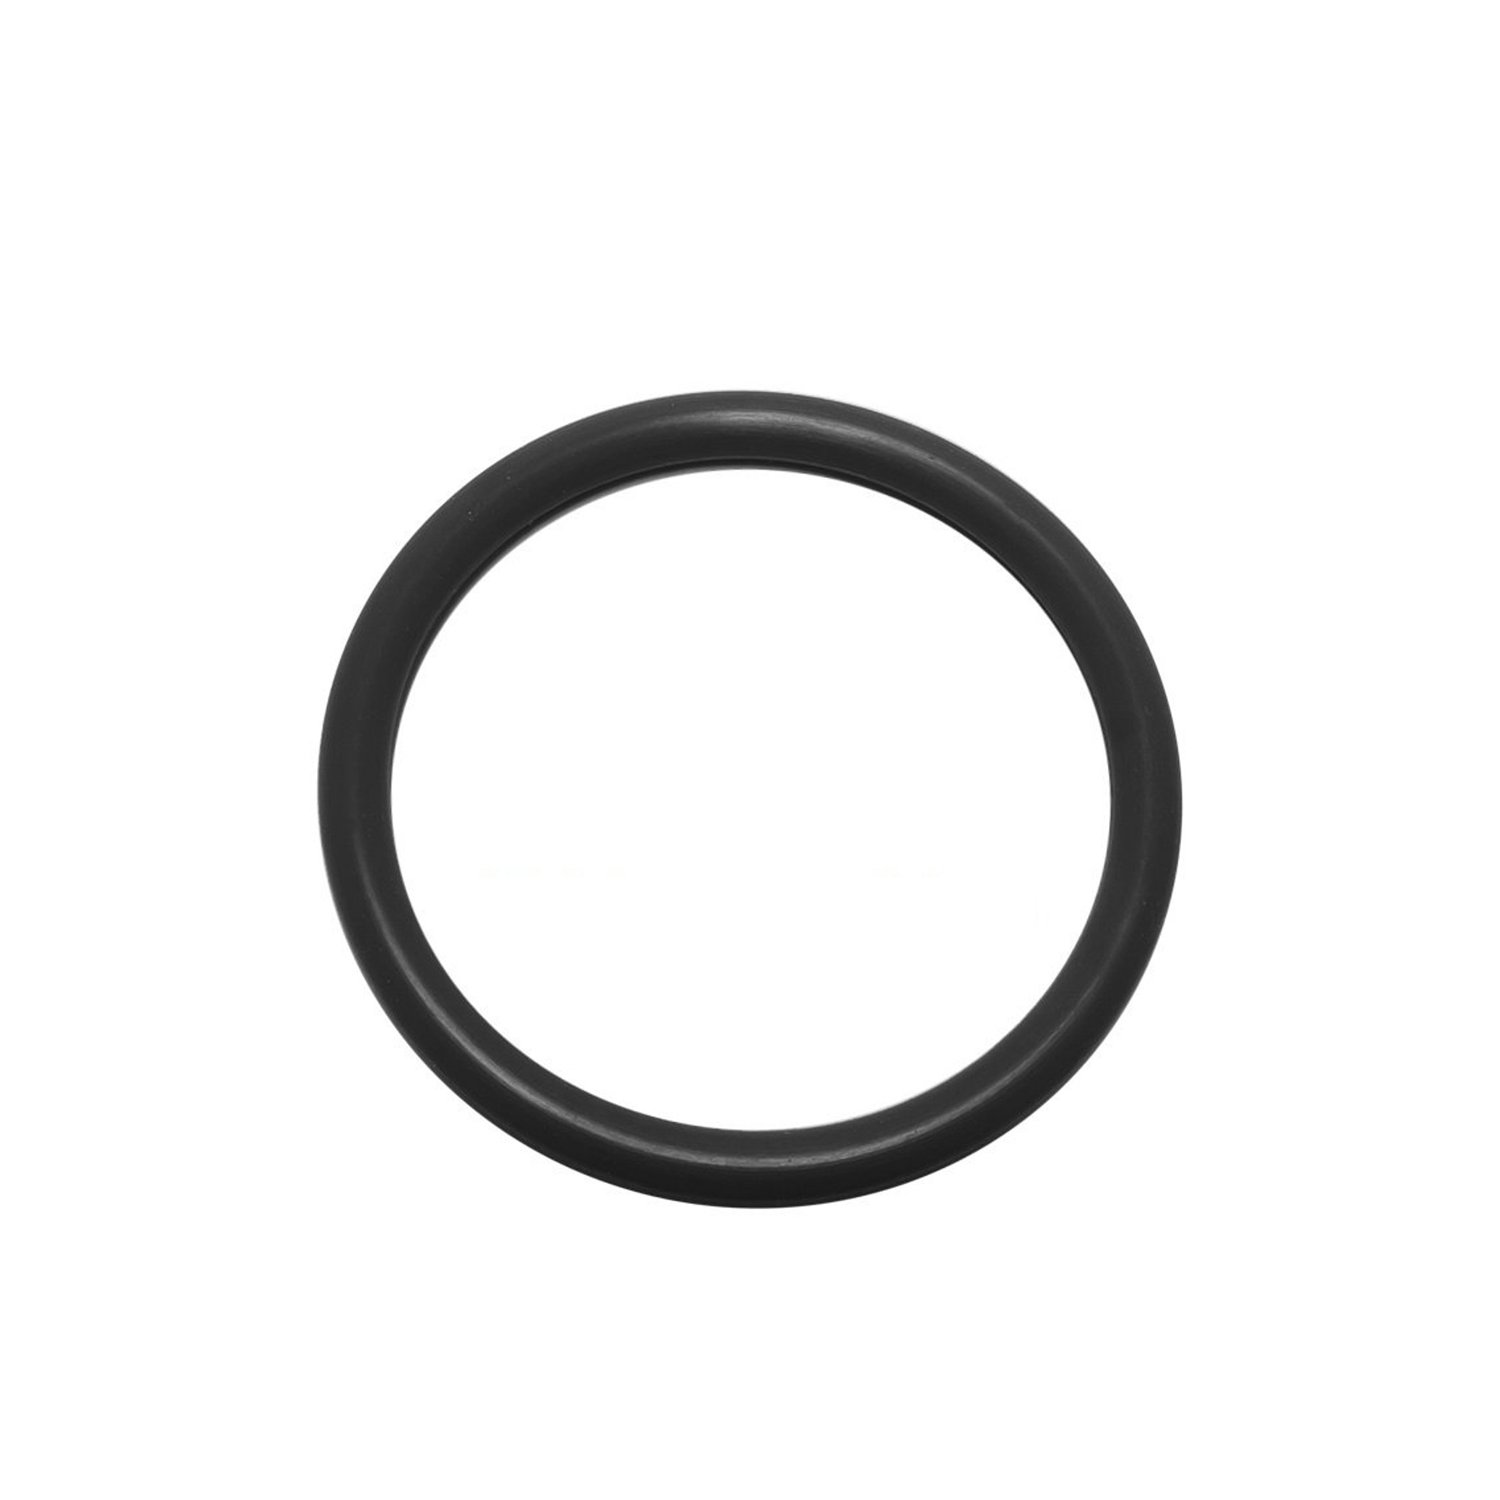 O-ring 6,07 x 1,78 mm 1 pz. gomma HNBR, per condizionatori d'aria R12 e R134a